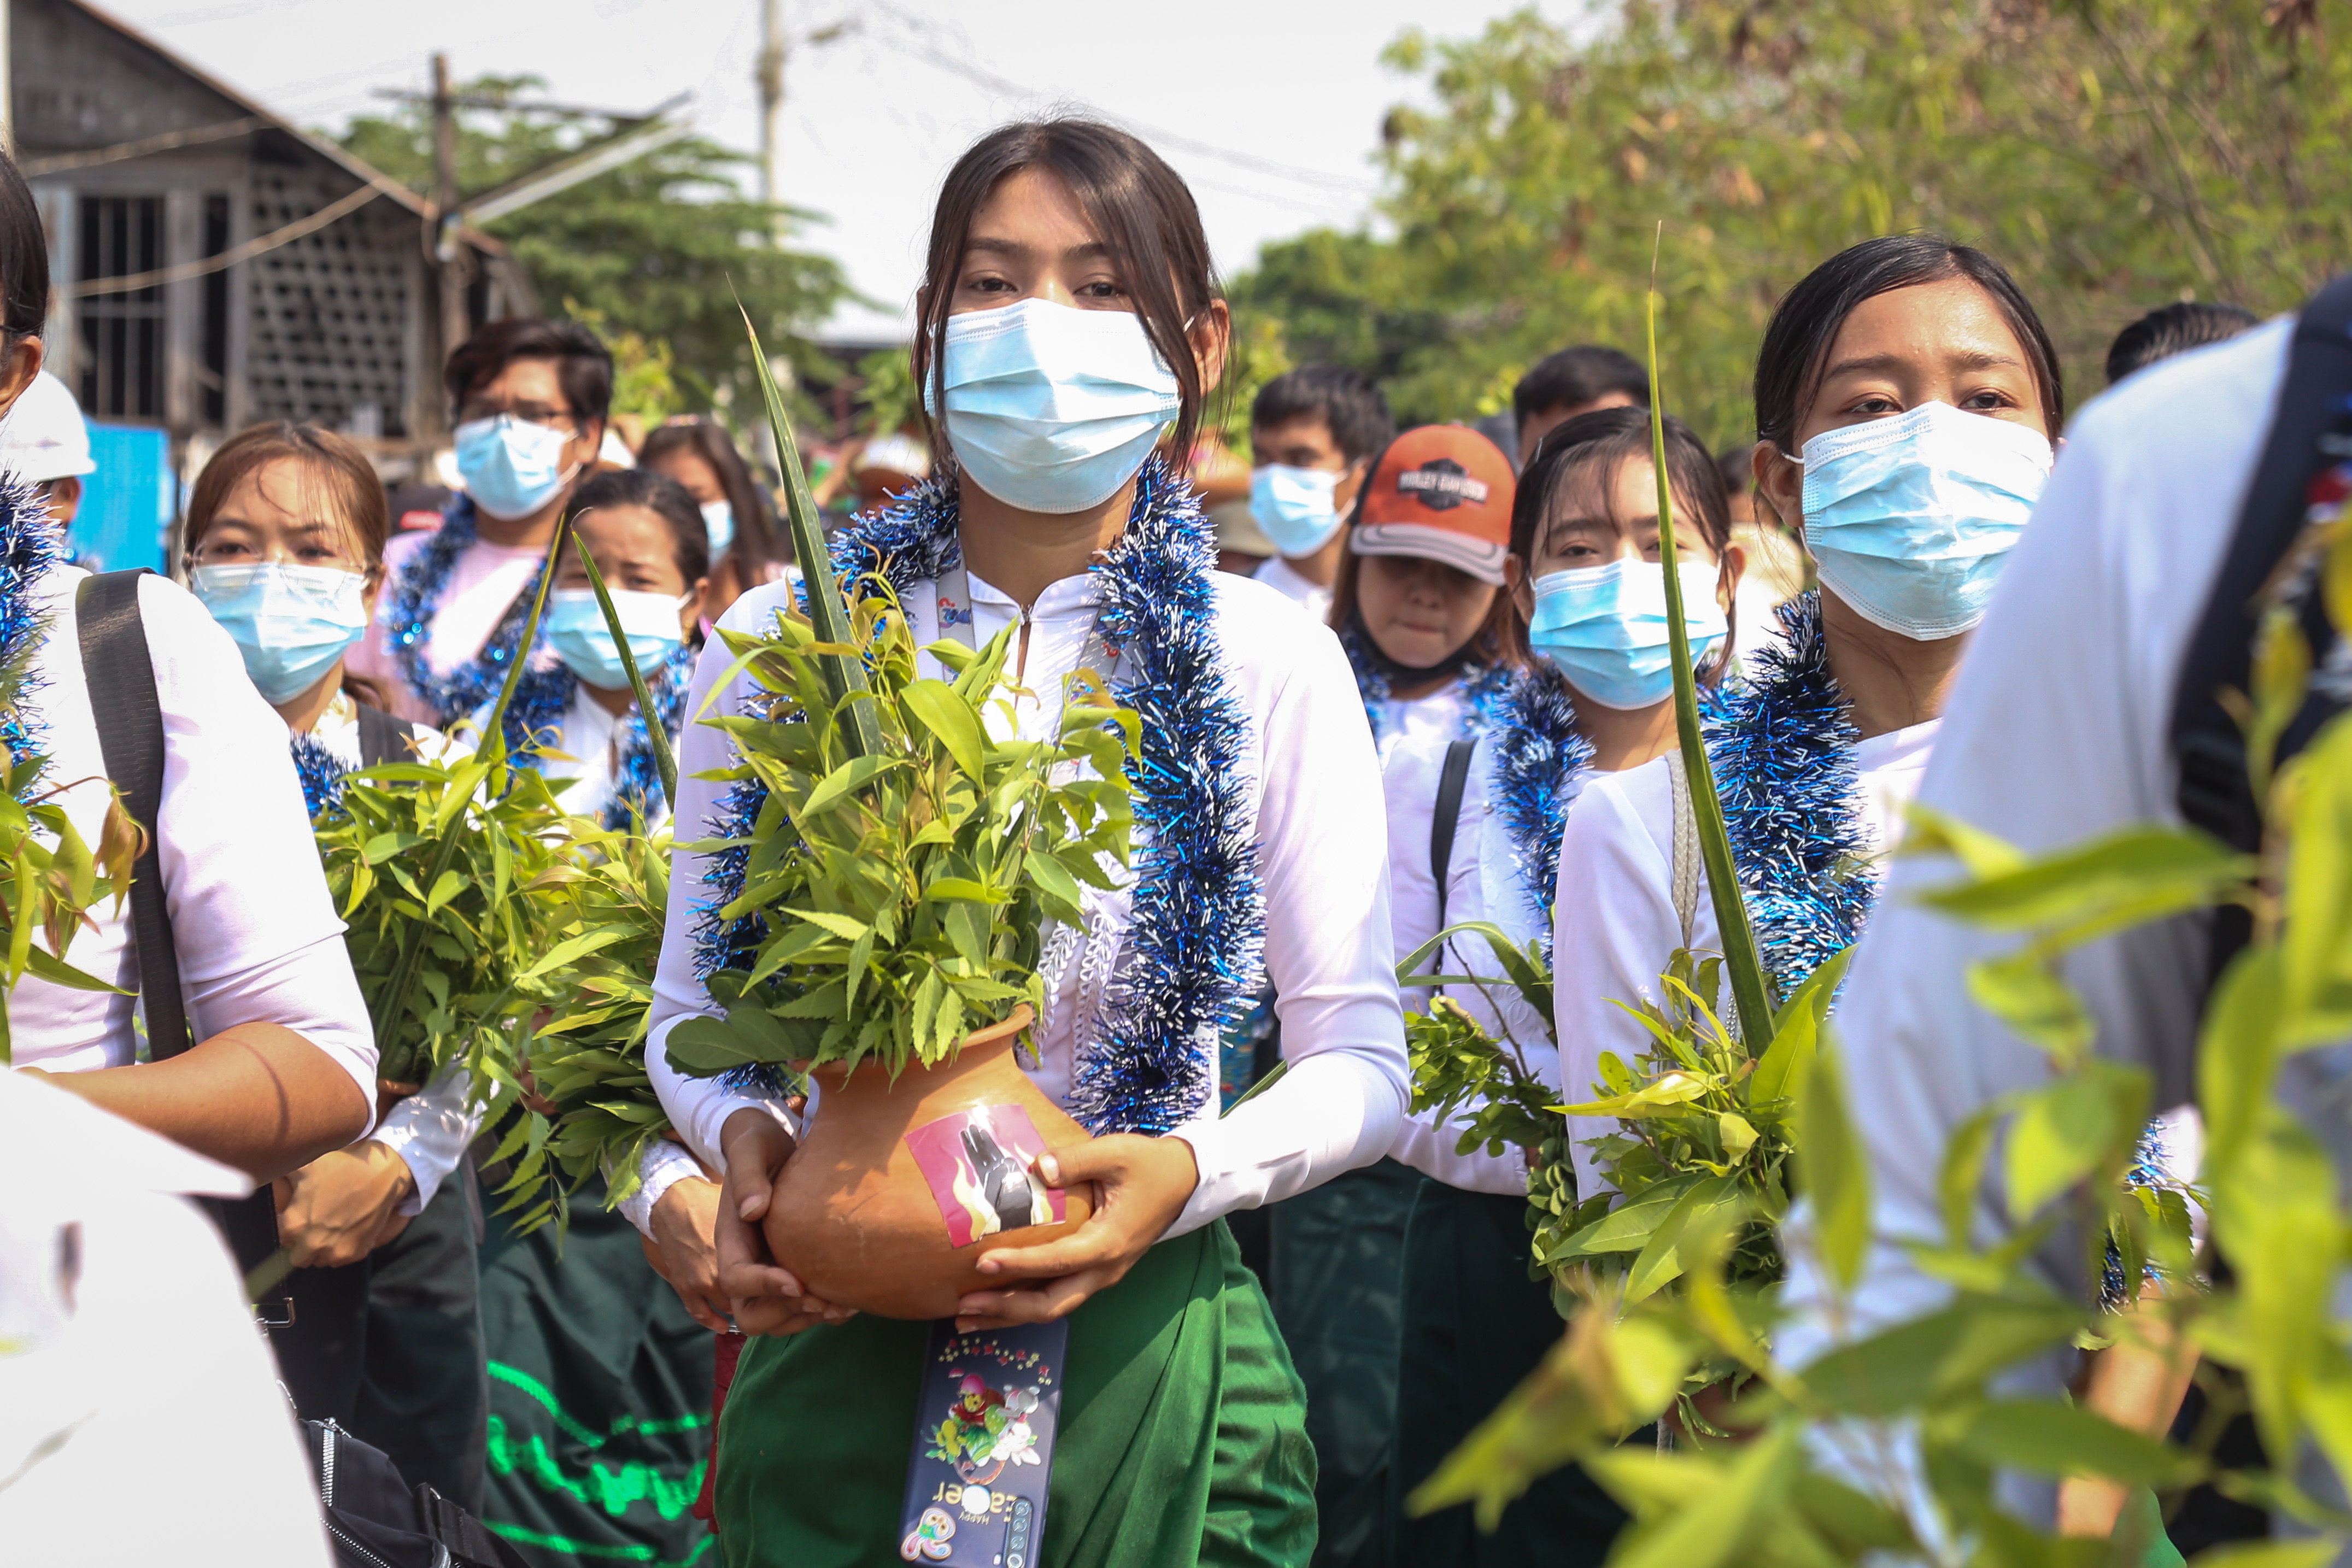 ‘띤잔’을 맞아 평화 시위 나선 미얀마 시민들